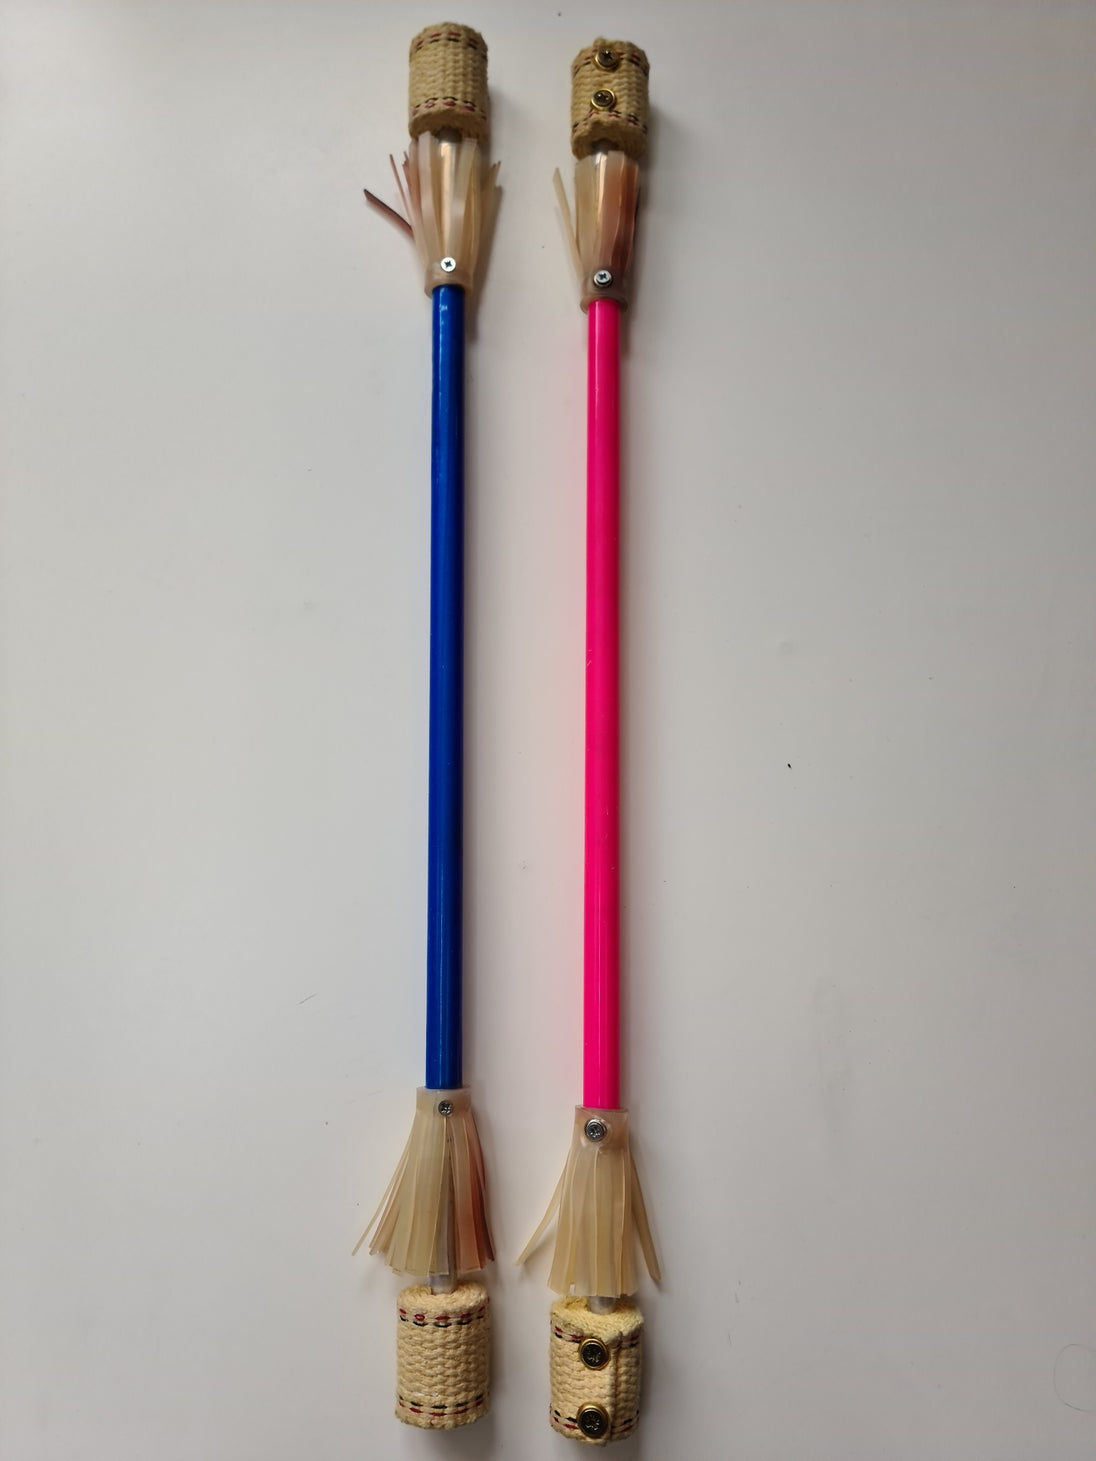 Fireflower sticks (single) - Bargain basement - RRP £34.99